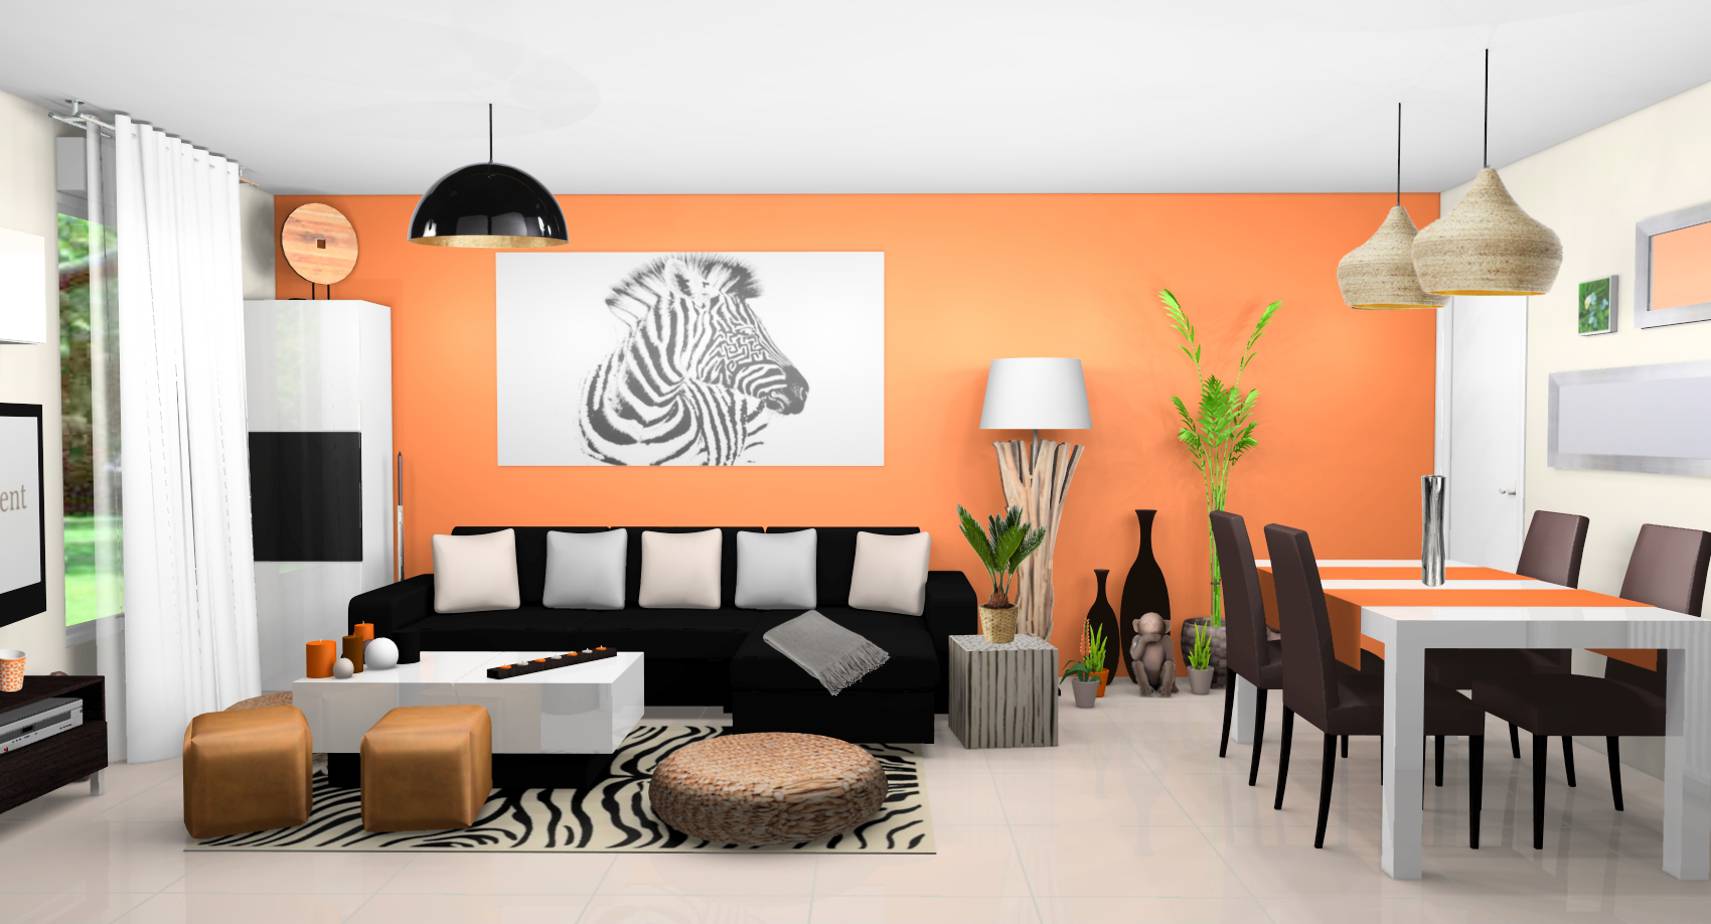 Séjour salle à manger contemporains exotiques murs lin orange carrelage brillant beige mobilier laqué blanc bois wengé tableau zèbre touches orange